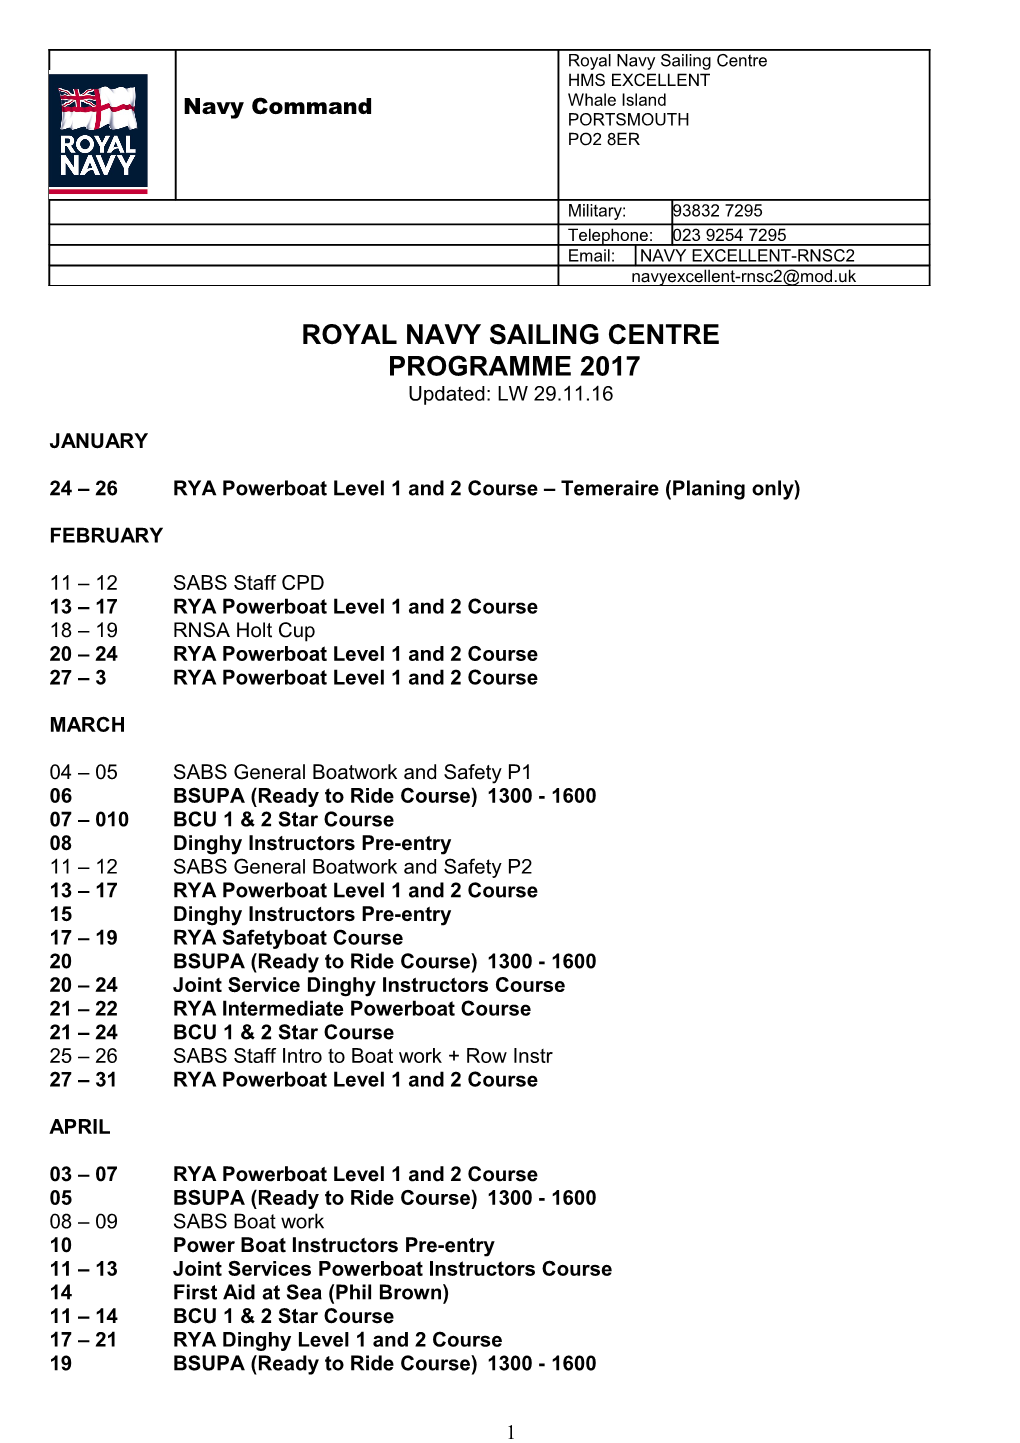 Royal Navy Sailing Centre